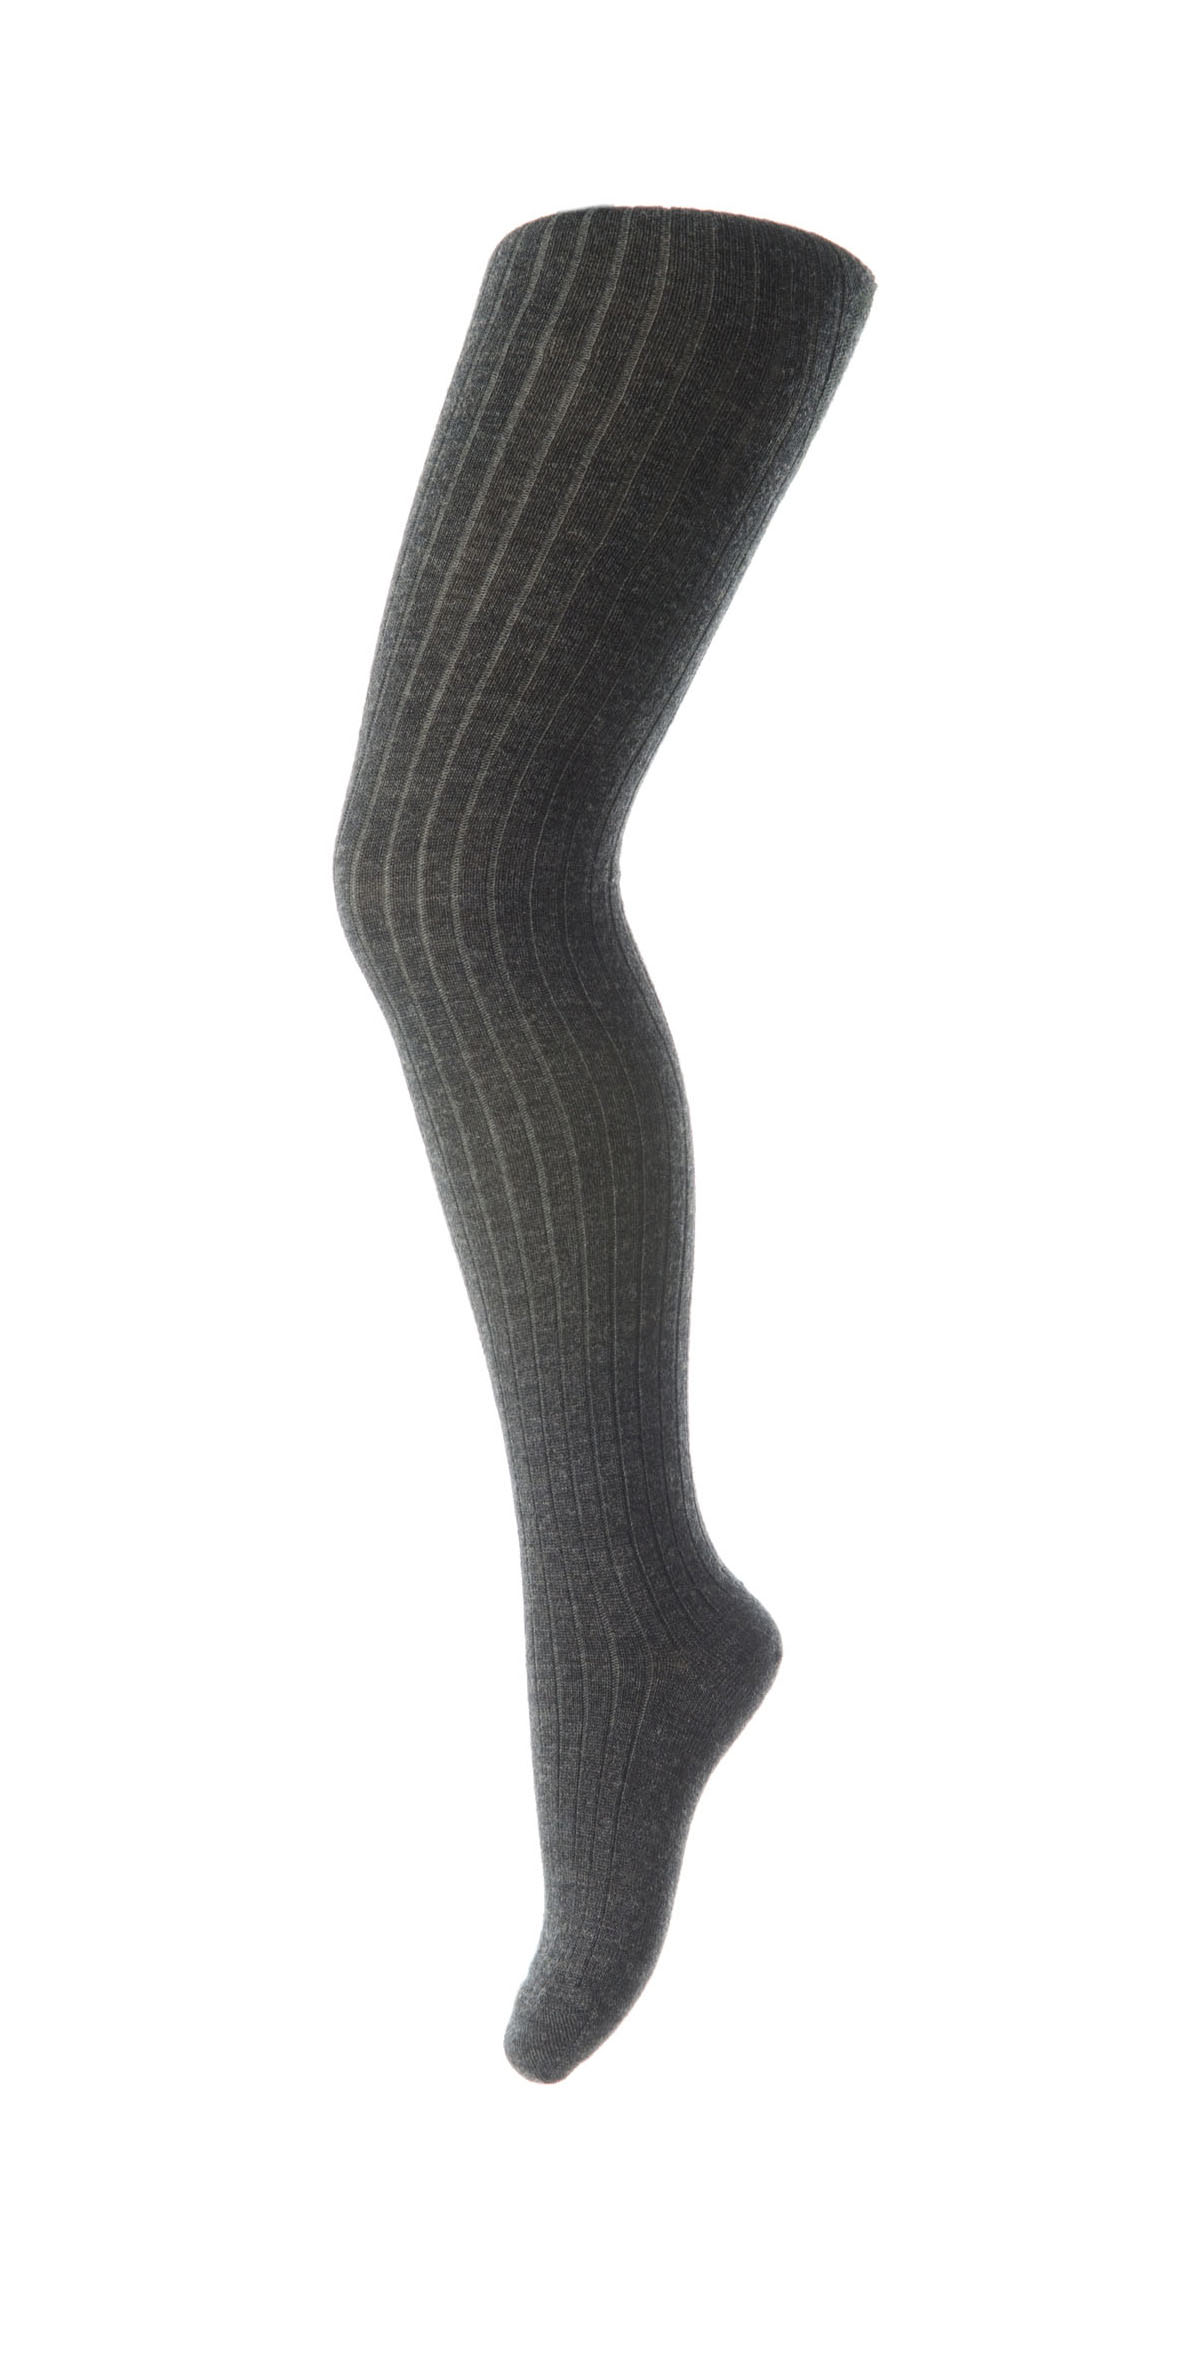  Uld Strømpebuks, Dark Grey Marled, 90 cm